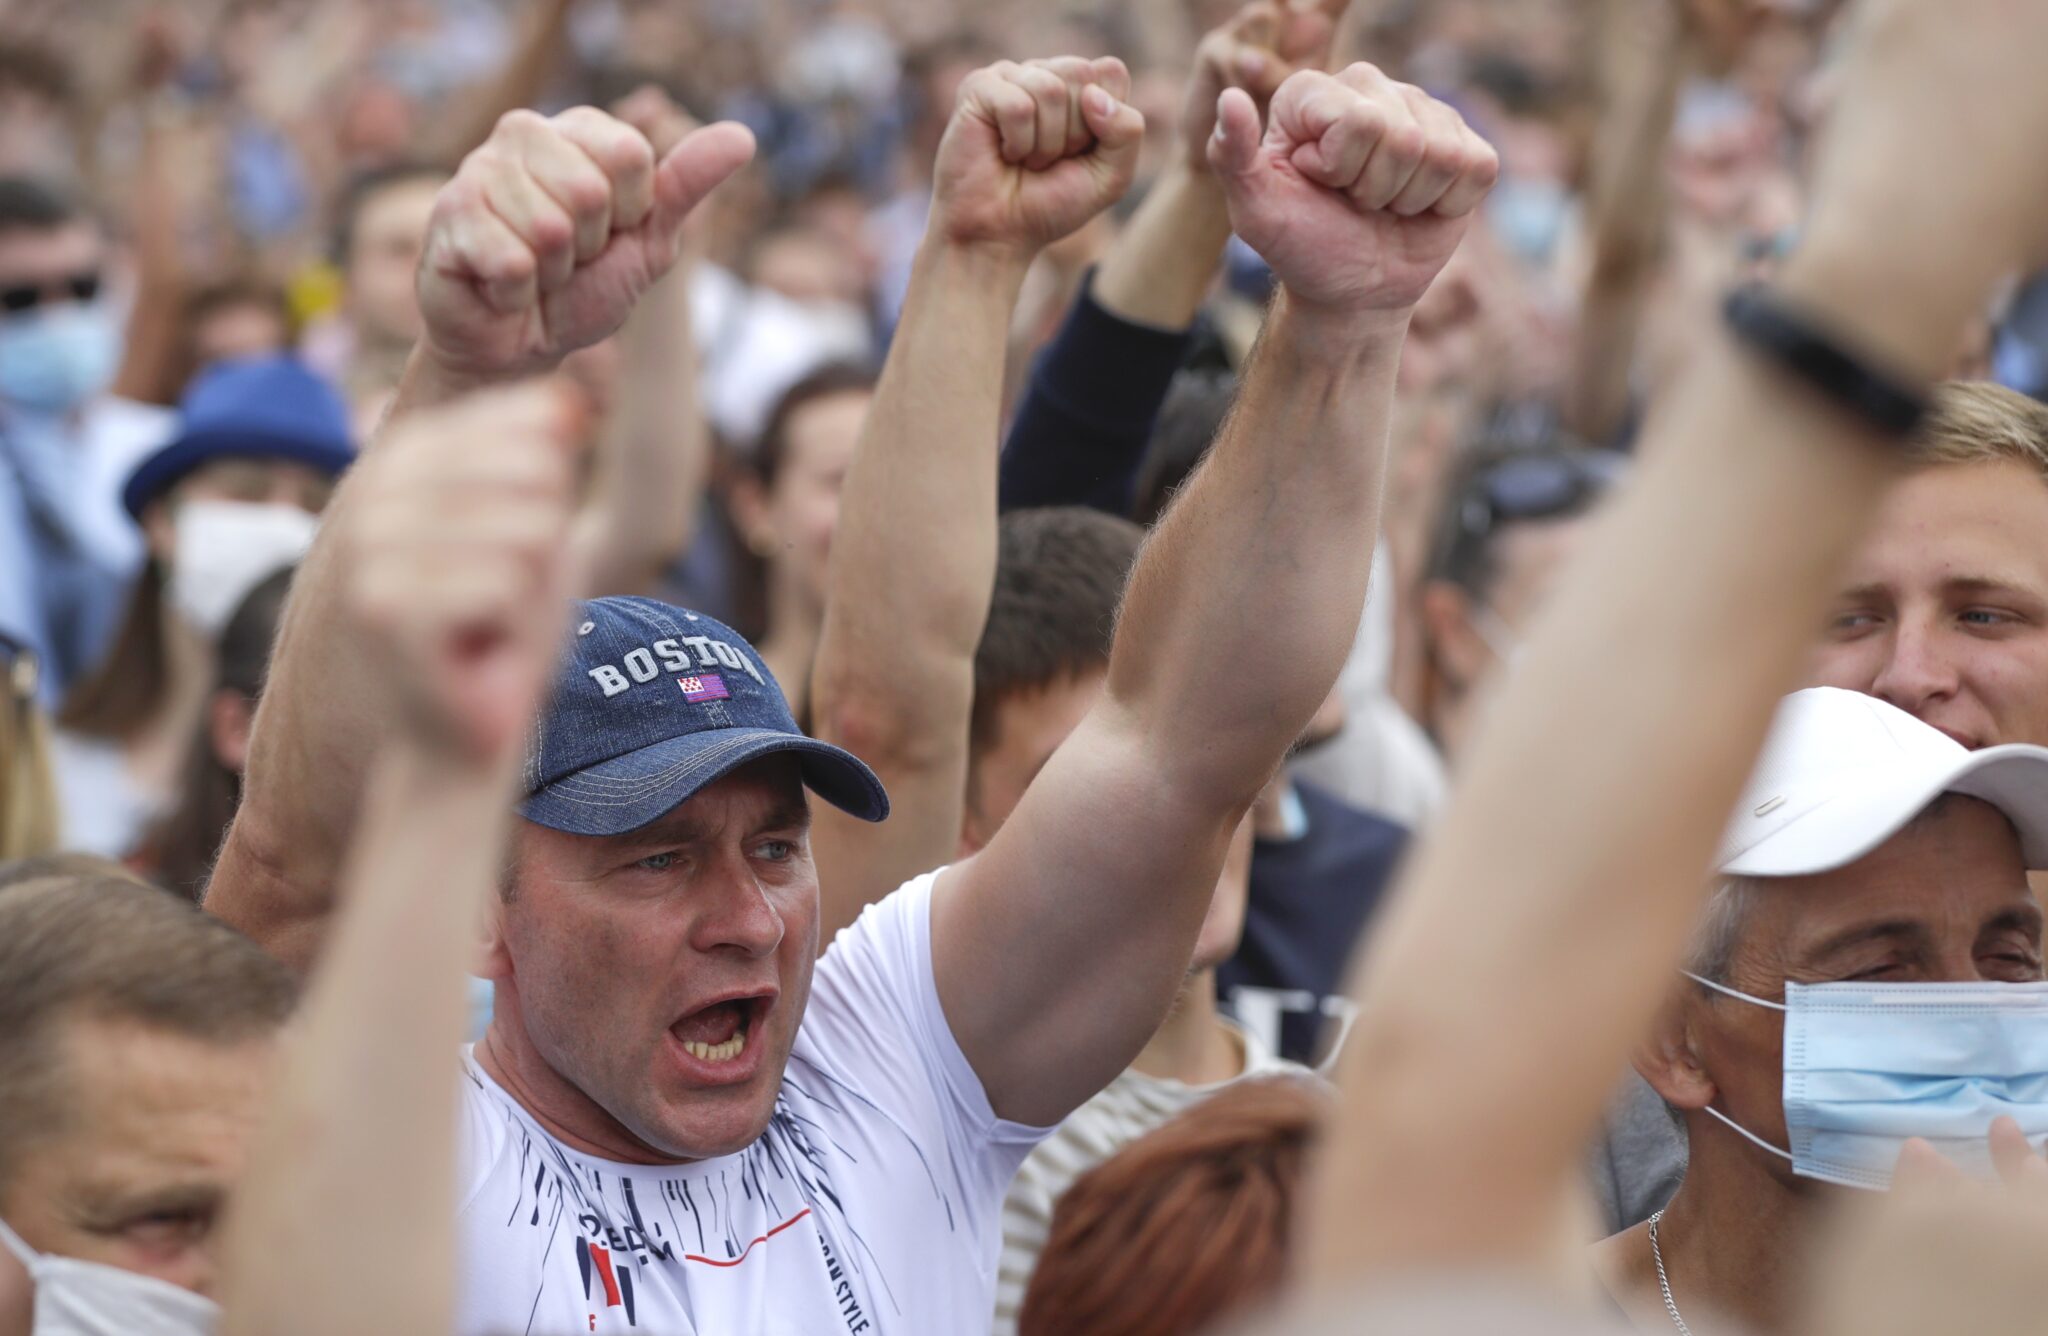 Участники митинга в поддержку Светланы Тихановской. Фото Sergei Grits/AP/Scanpix/Leta